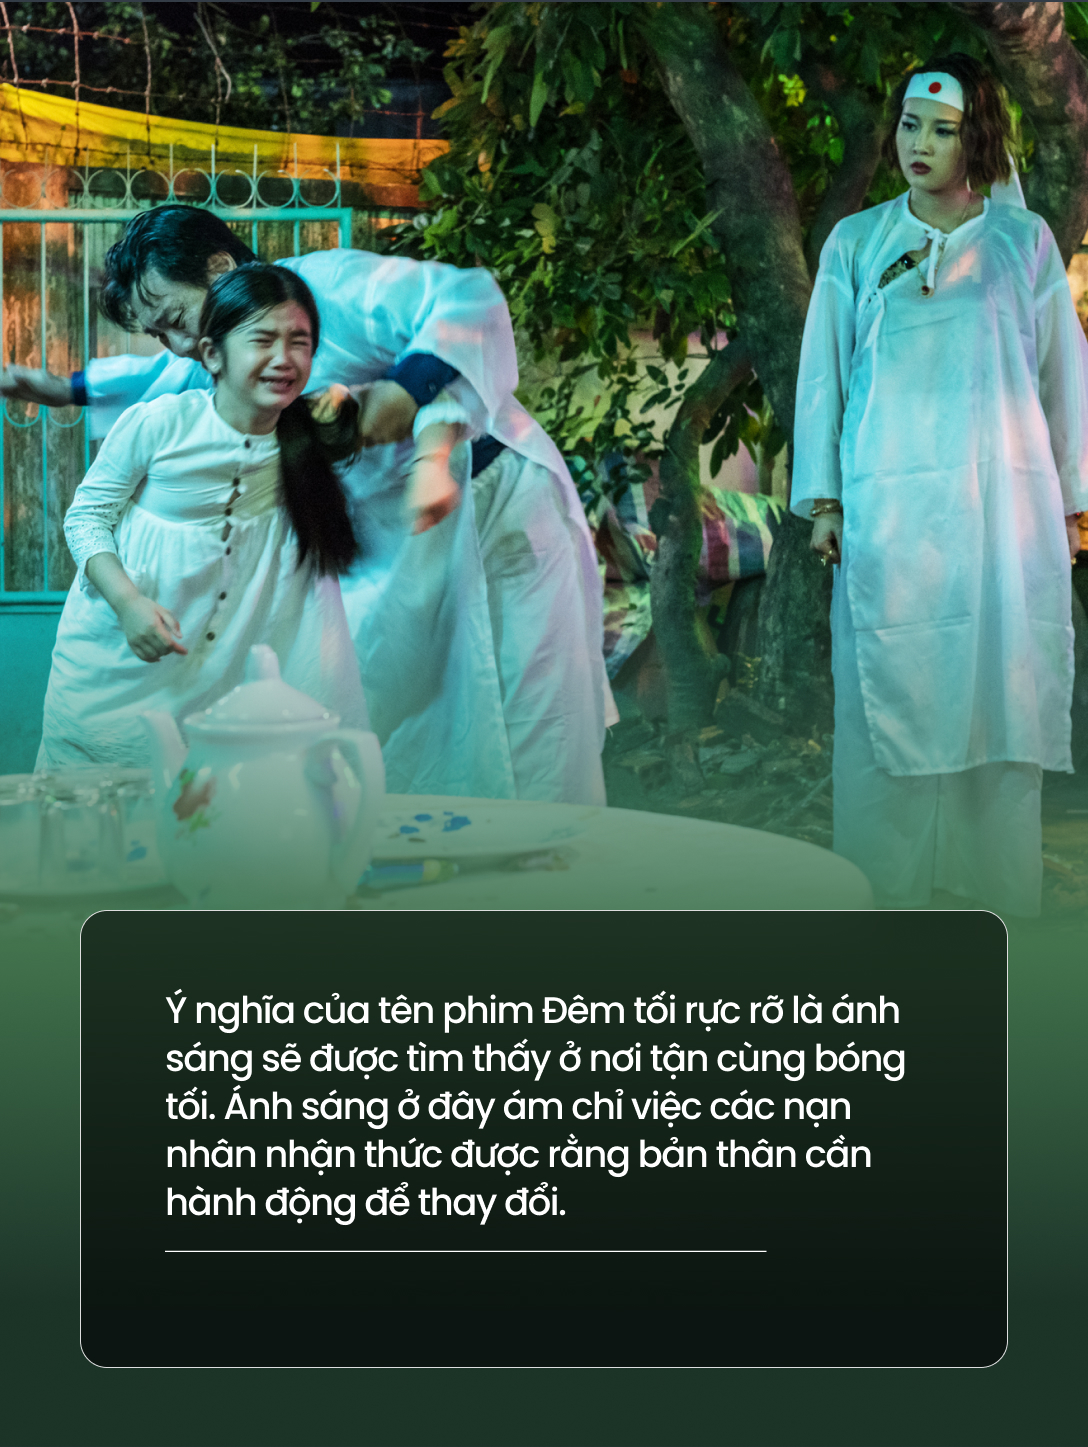 Review Đêm tối rực rỡ: Nhìn vào gia đình vô phúc nhất Việt Nam để thấy vấn nạn bạo hành nhức nhối đến thế nào - Ảnh 6.